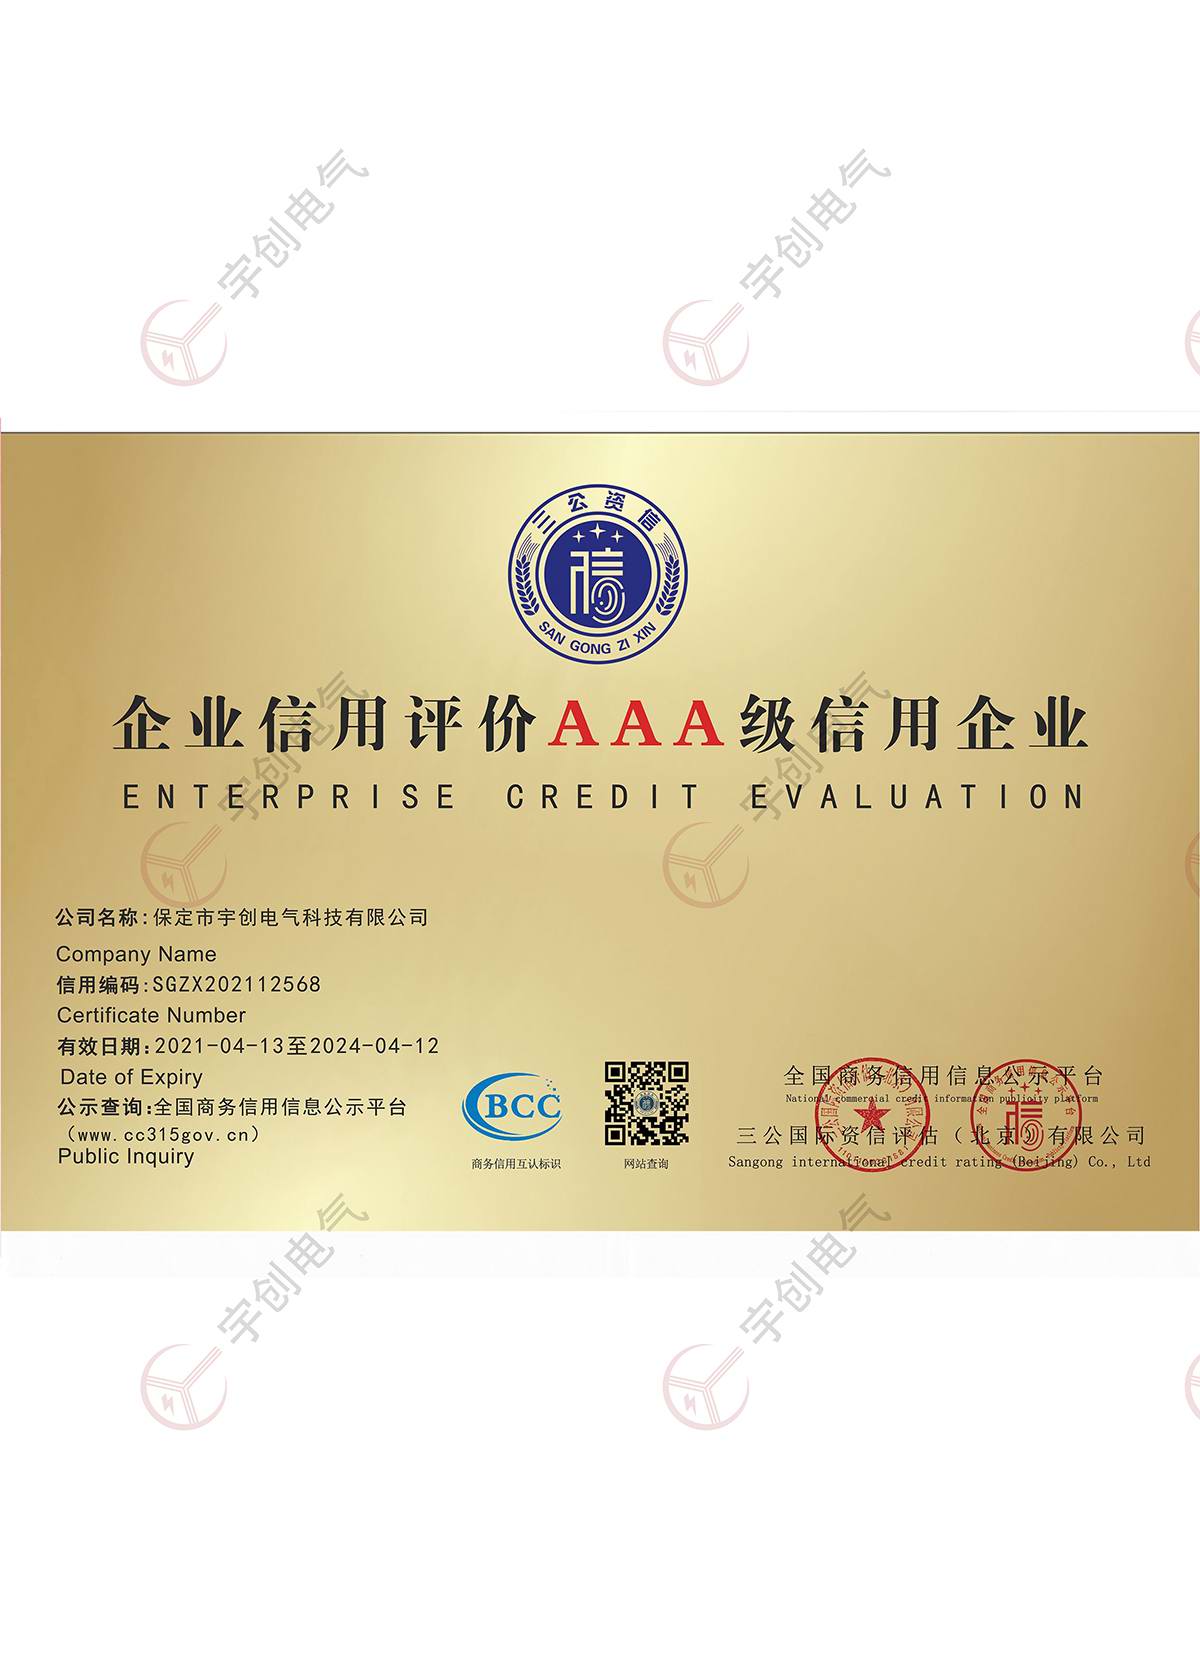 郑州企业信用评价AAA级信用企业